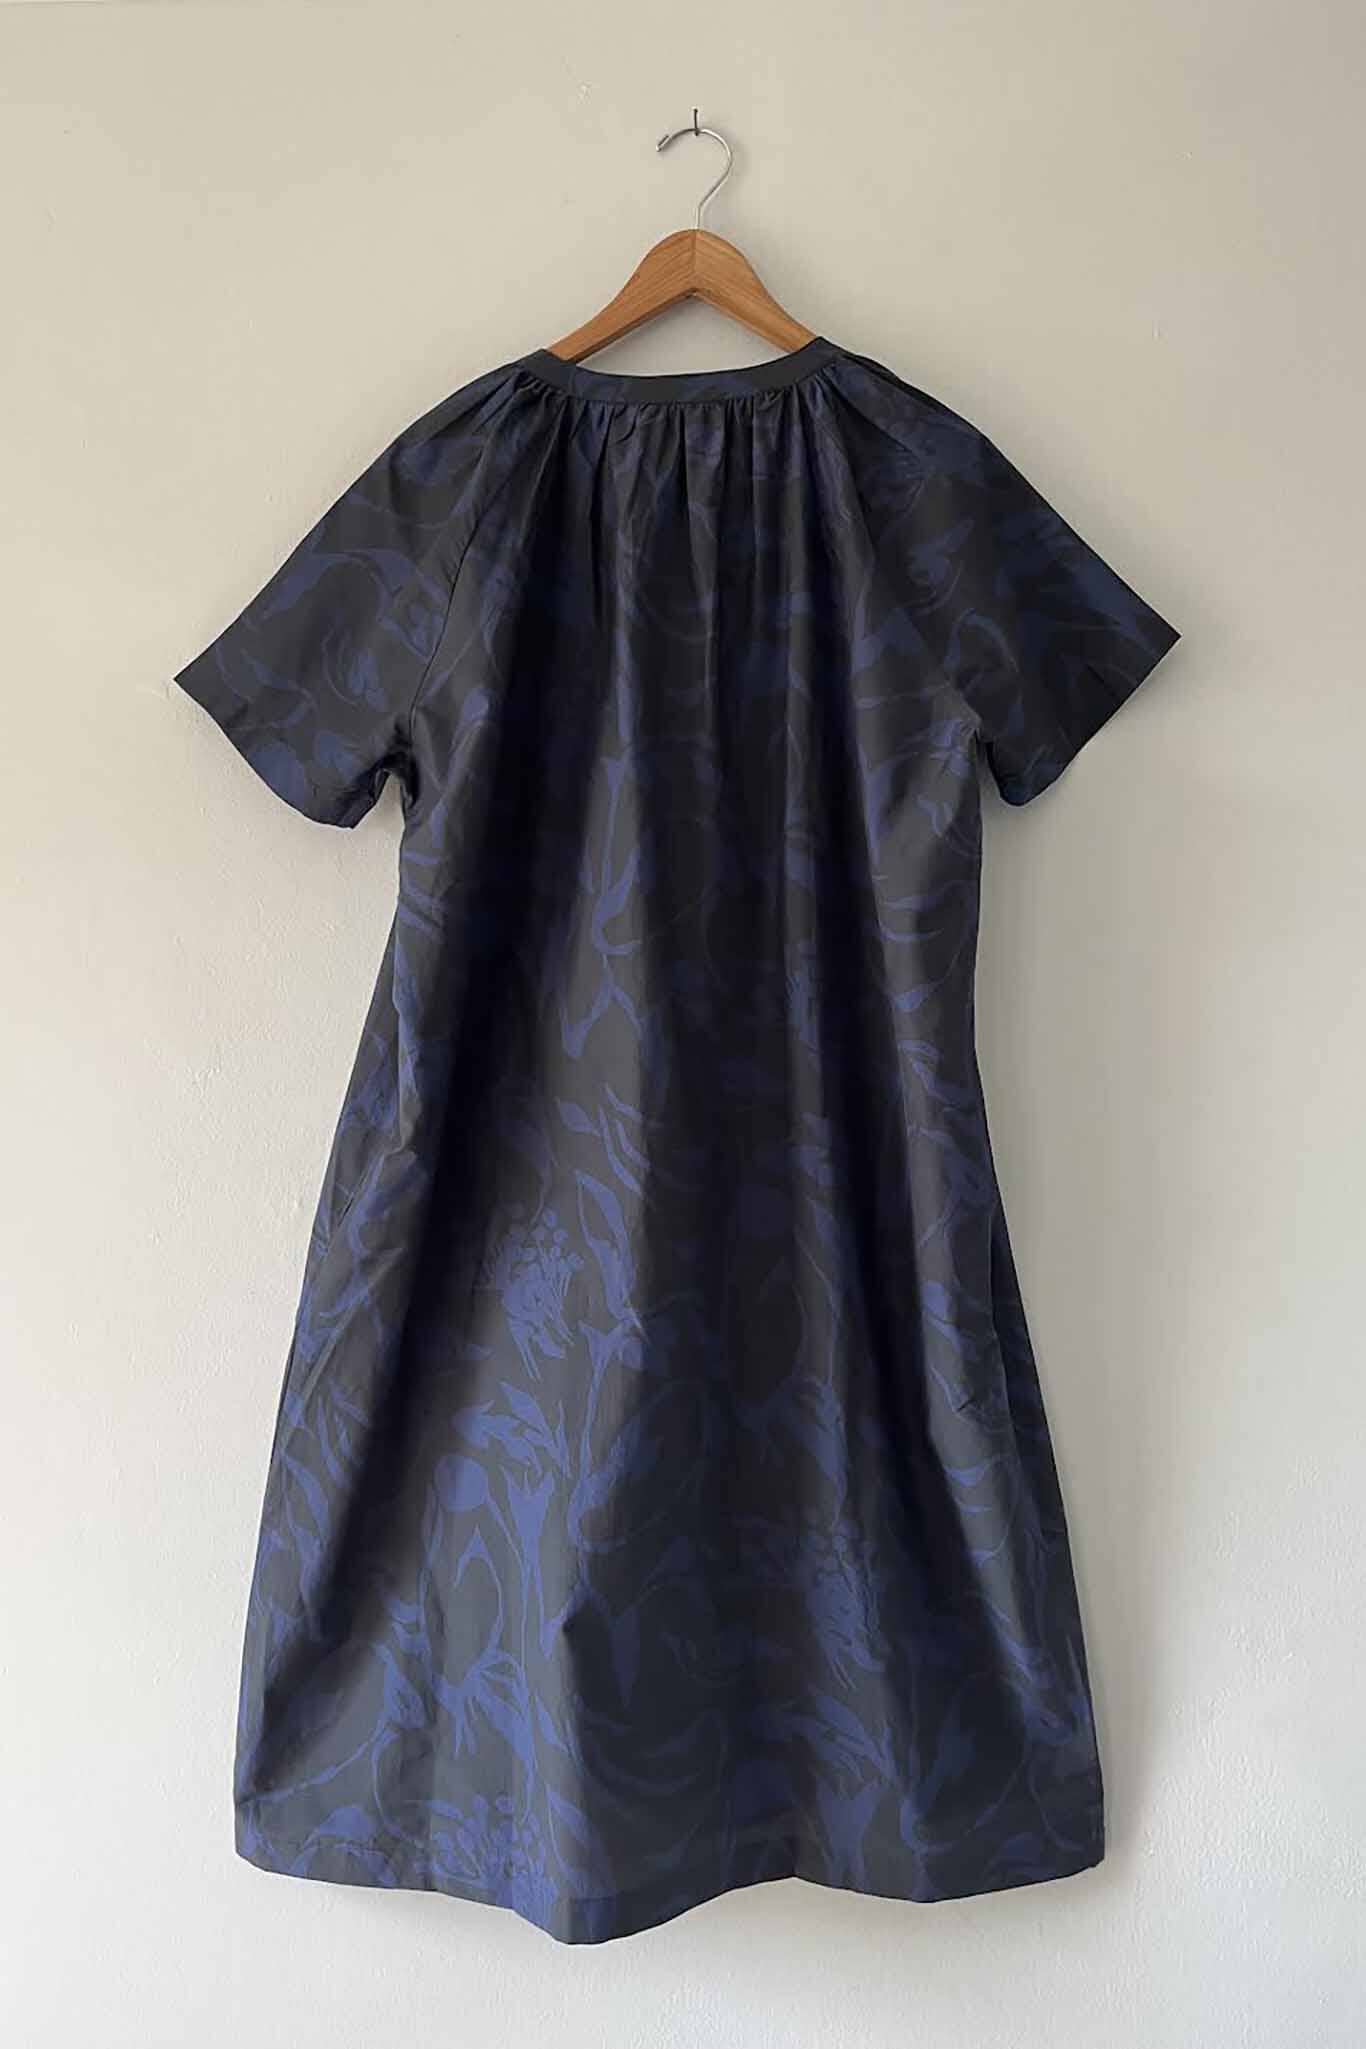 M.PATMOS Adelphi Dress - Splashy Navy/Black